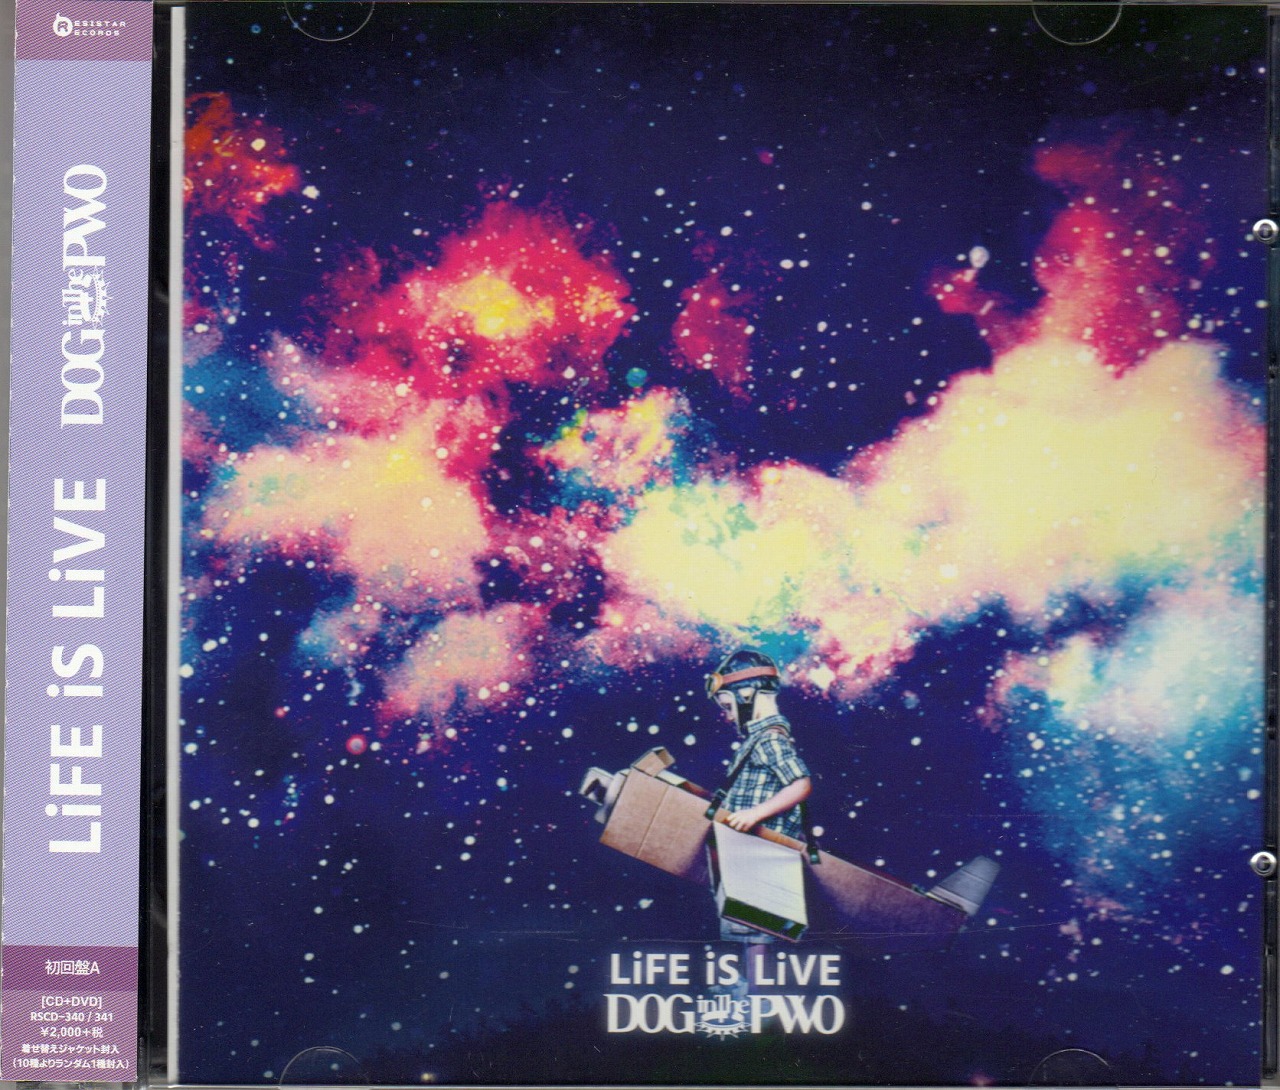 ドッグインザパラレルワールドオーケストラ の CD 【初回盤A】LiFE iS LiVE